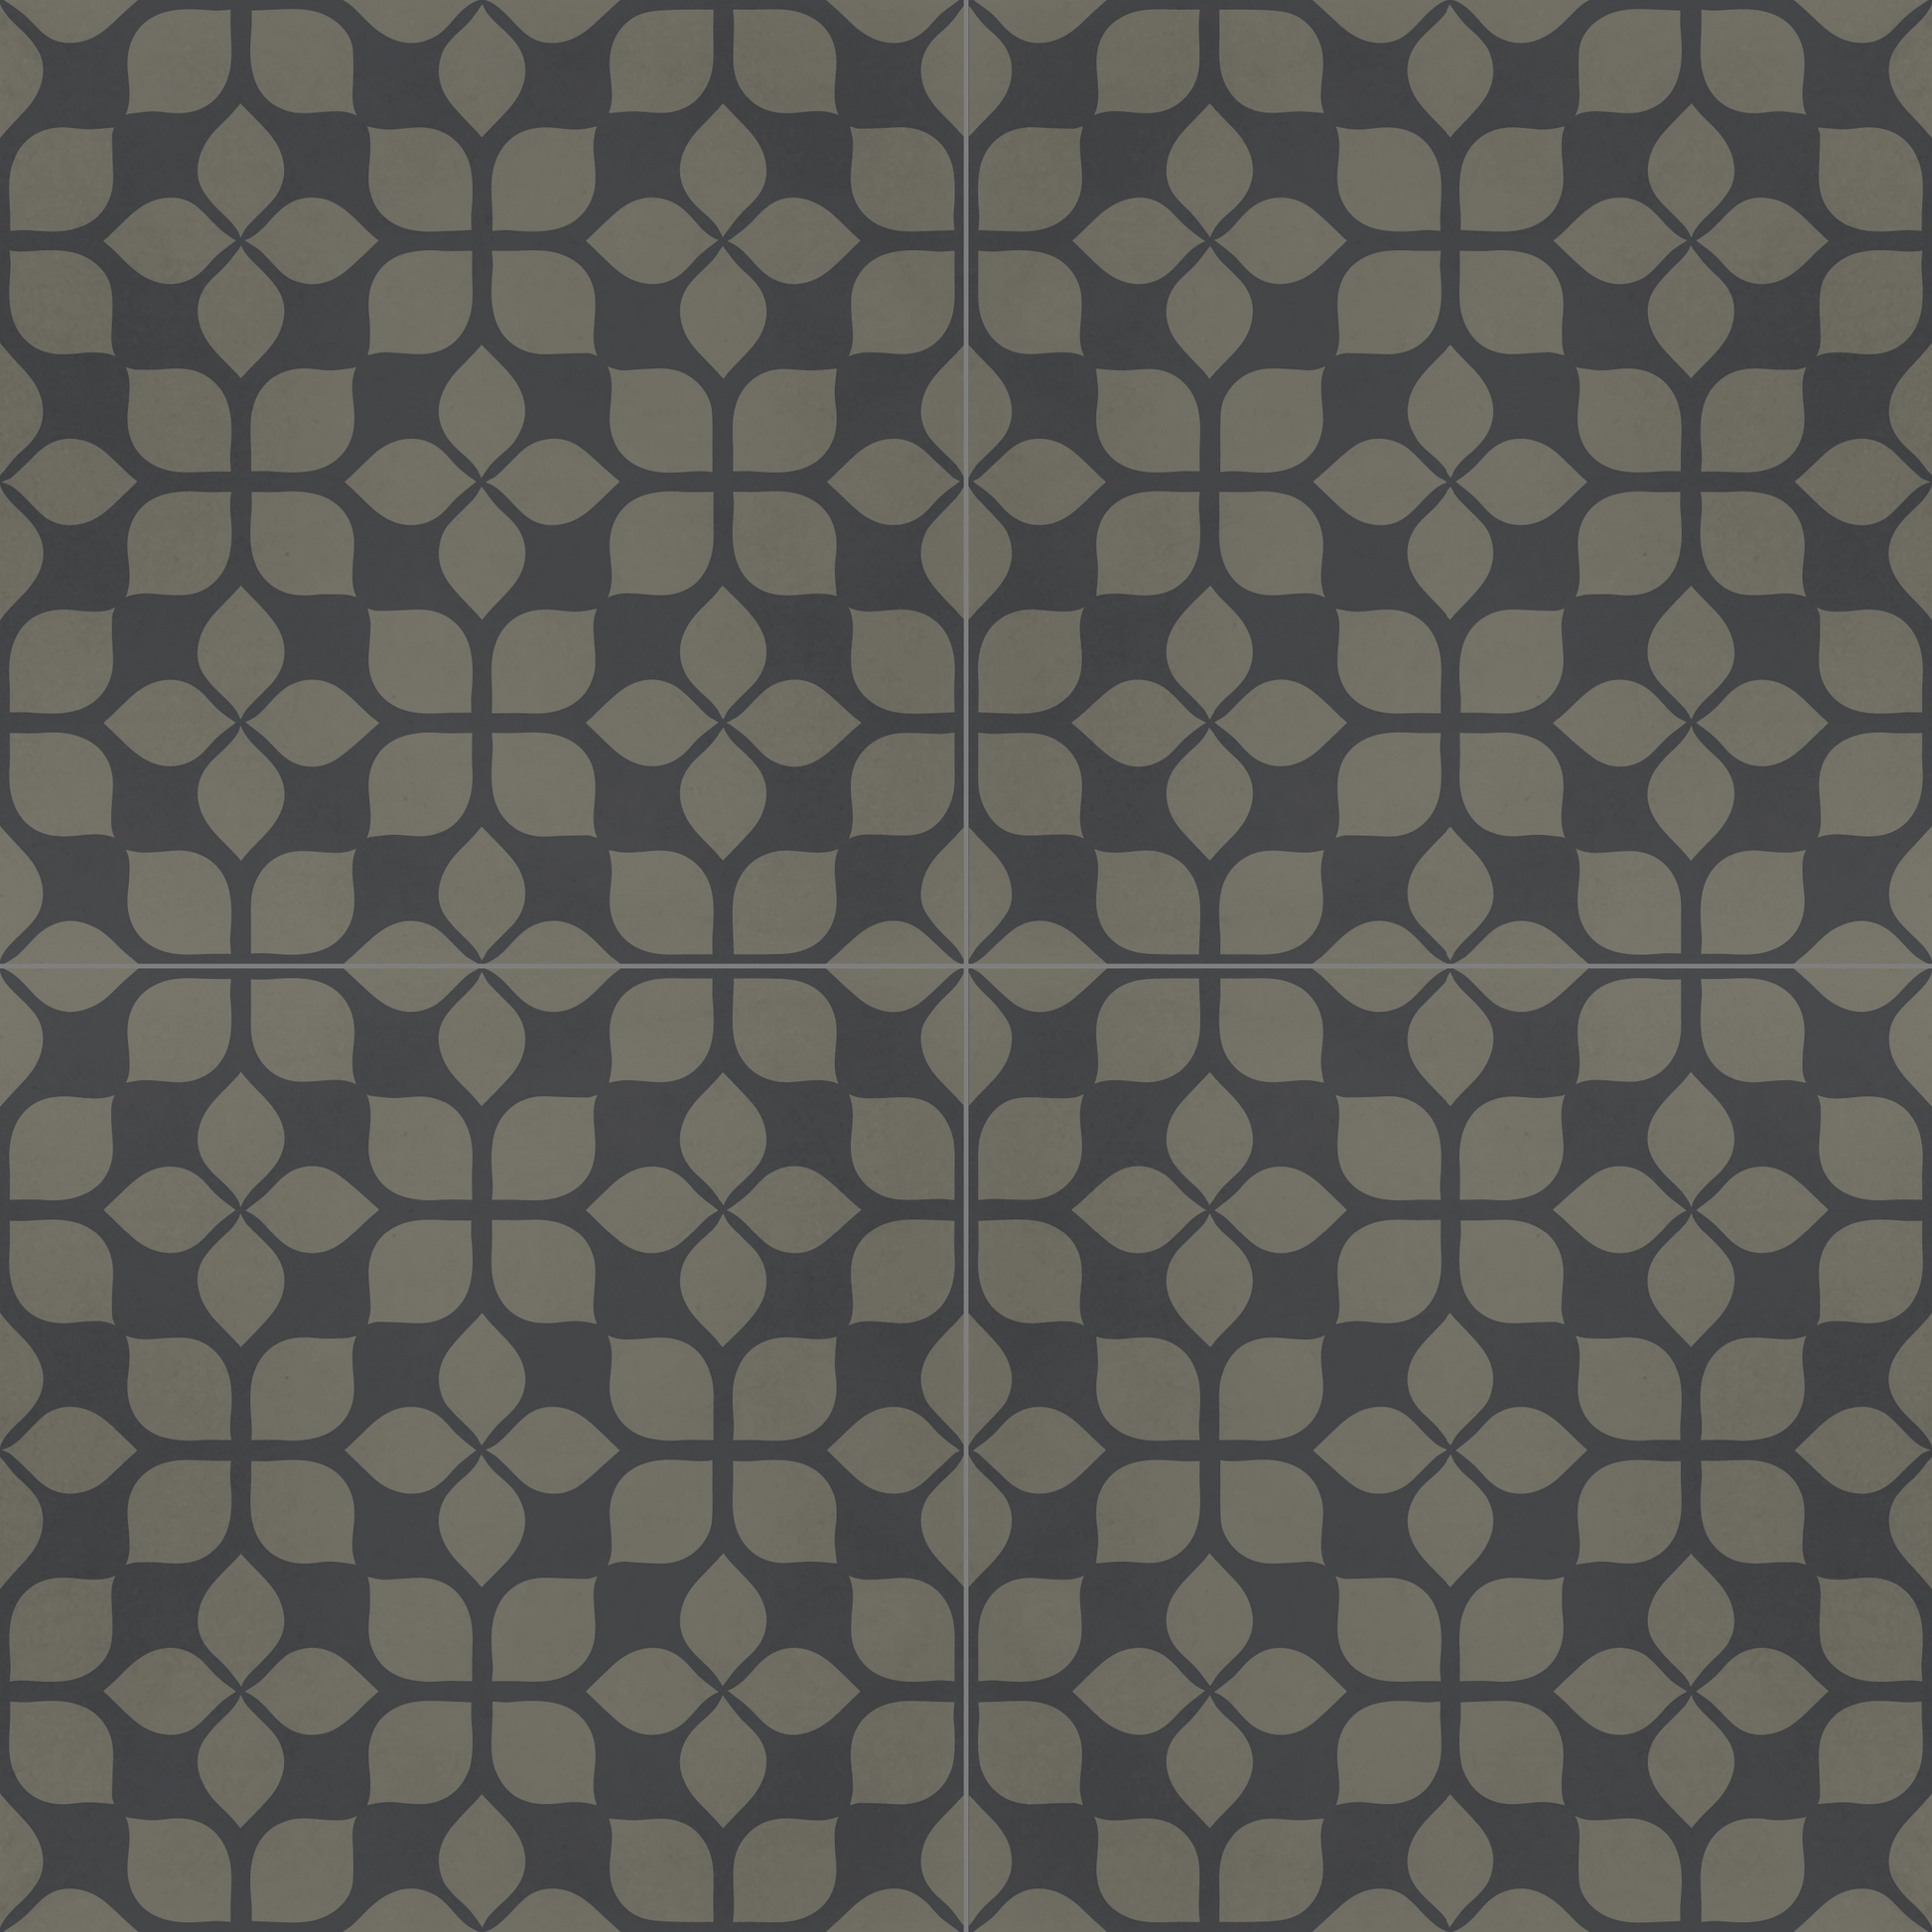 Encaustic Cement Tile, Concrete Tile, Modern Floral Pattern Tiles